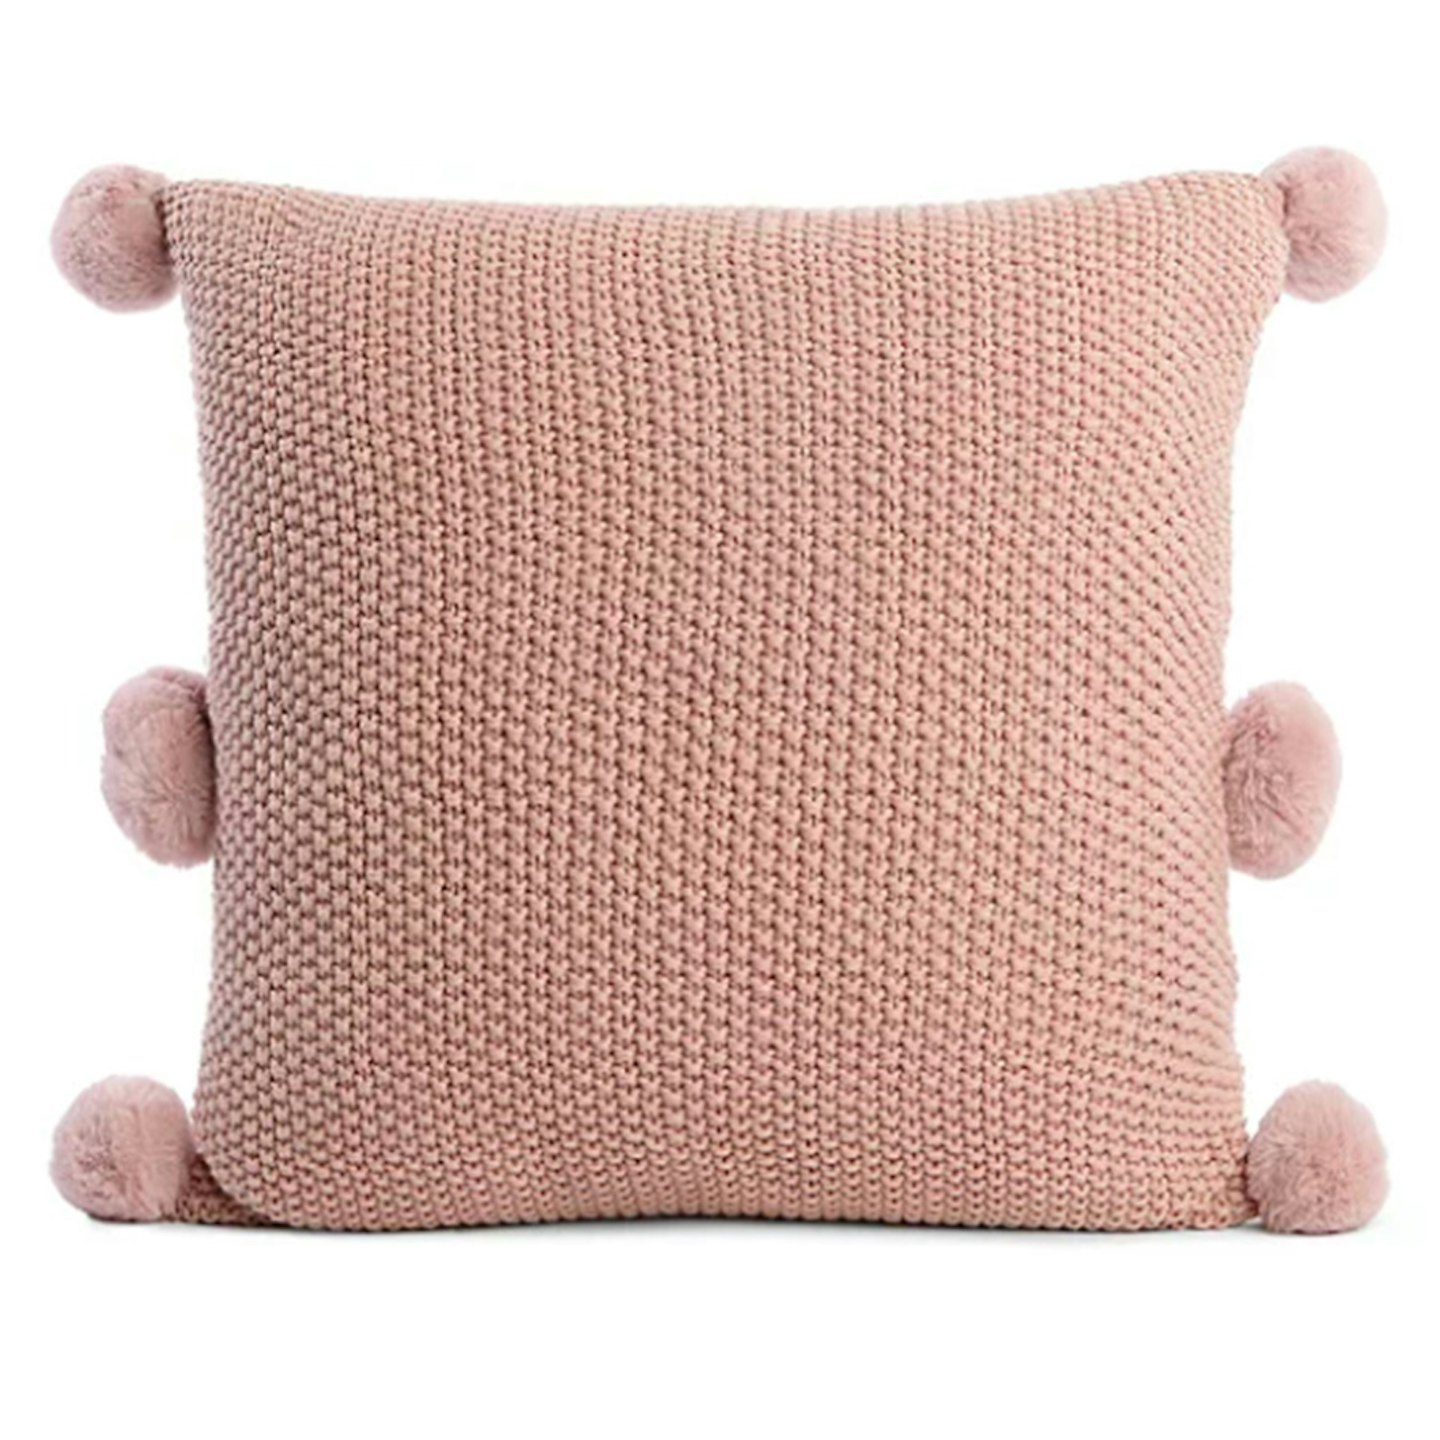 Pink pom pom cushion, £10